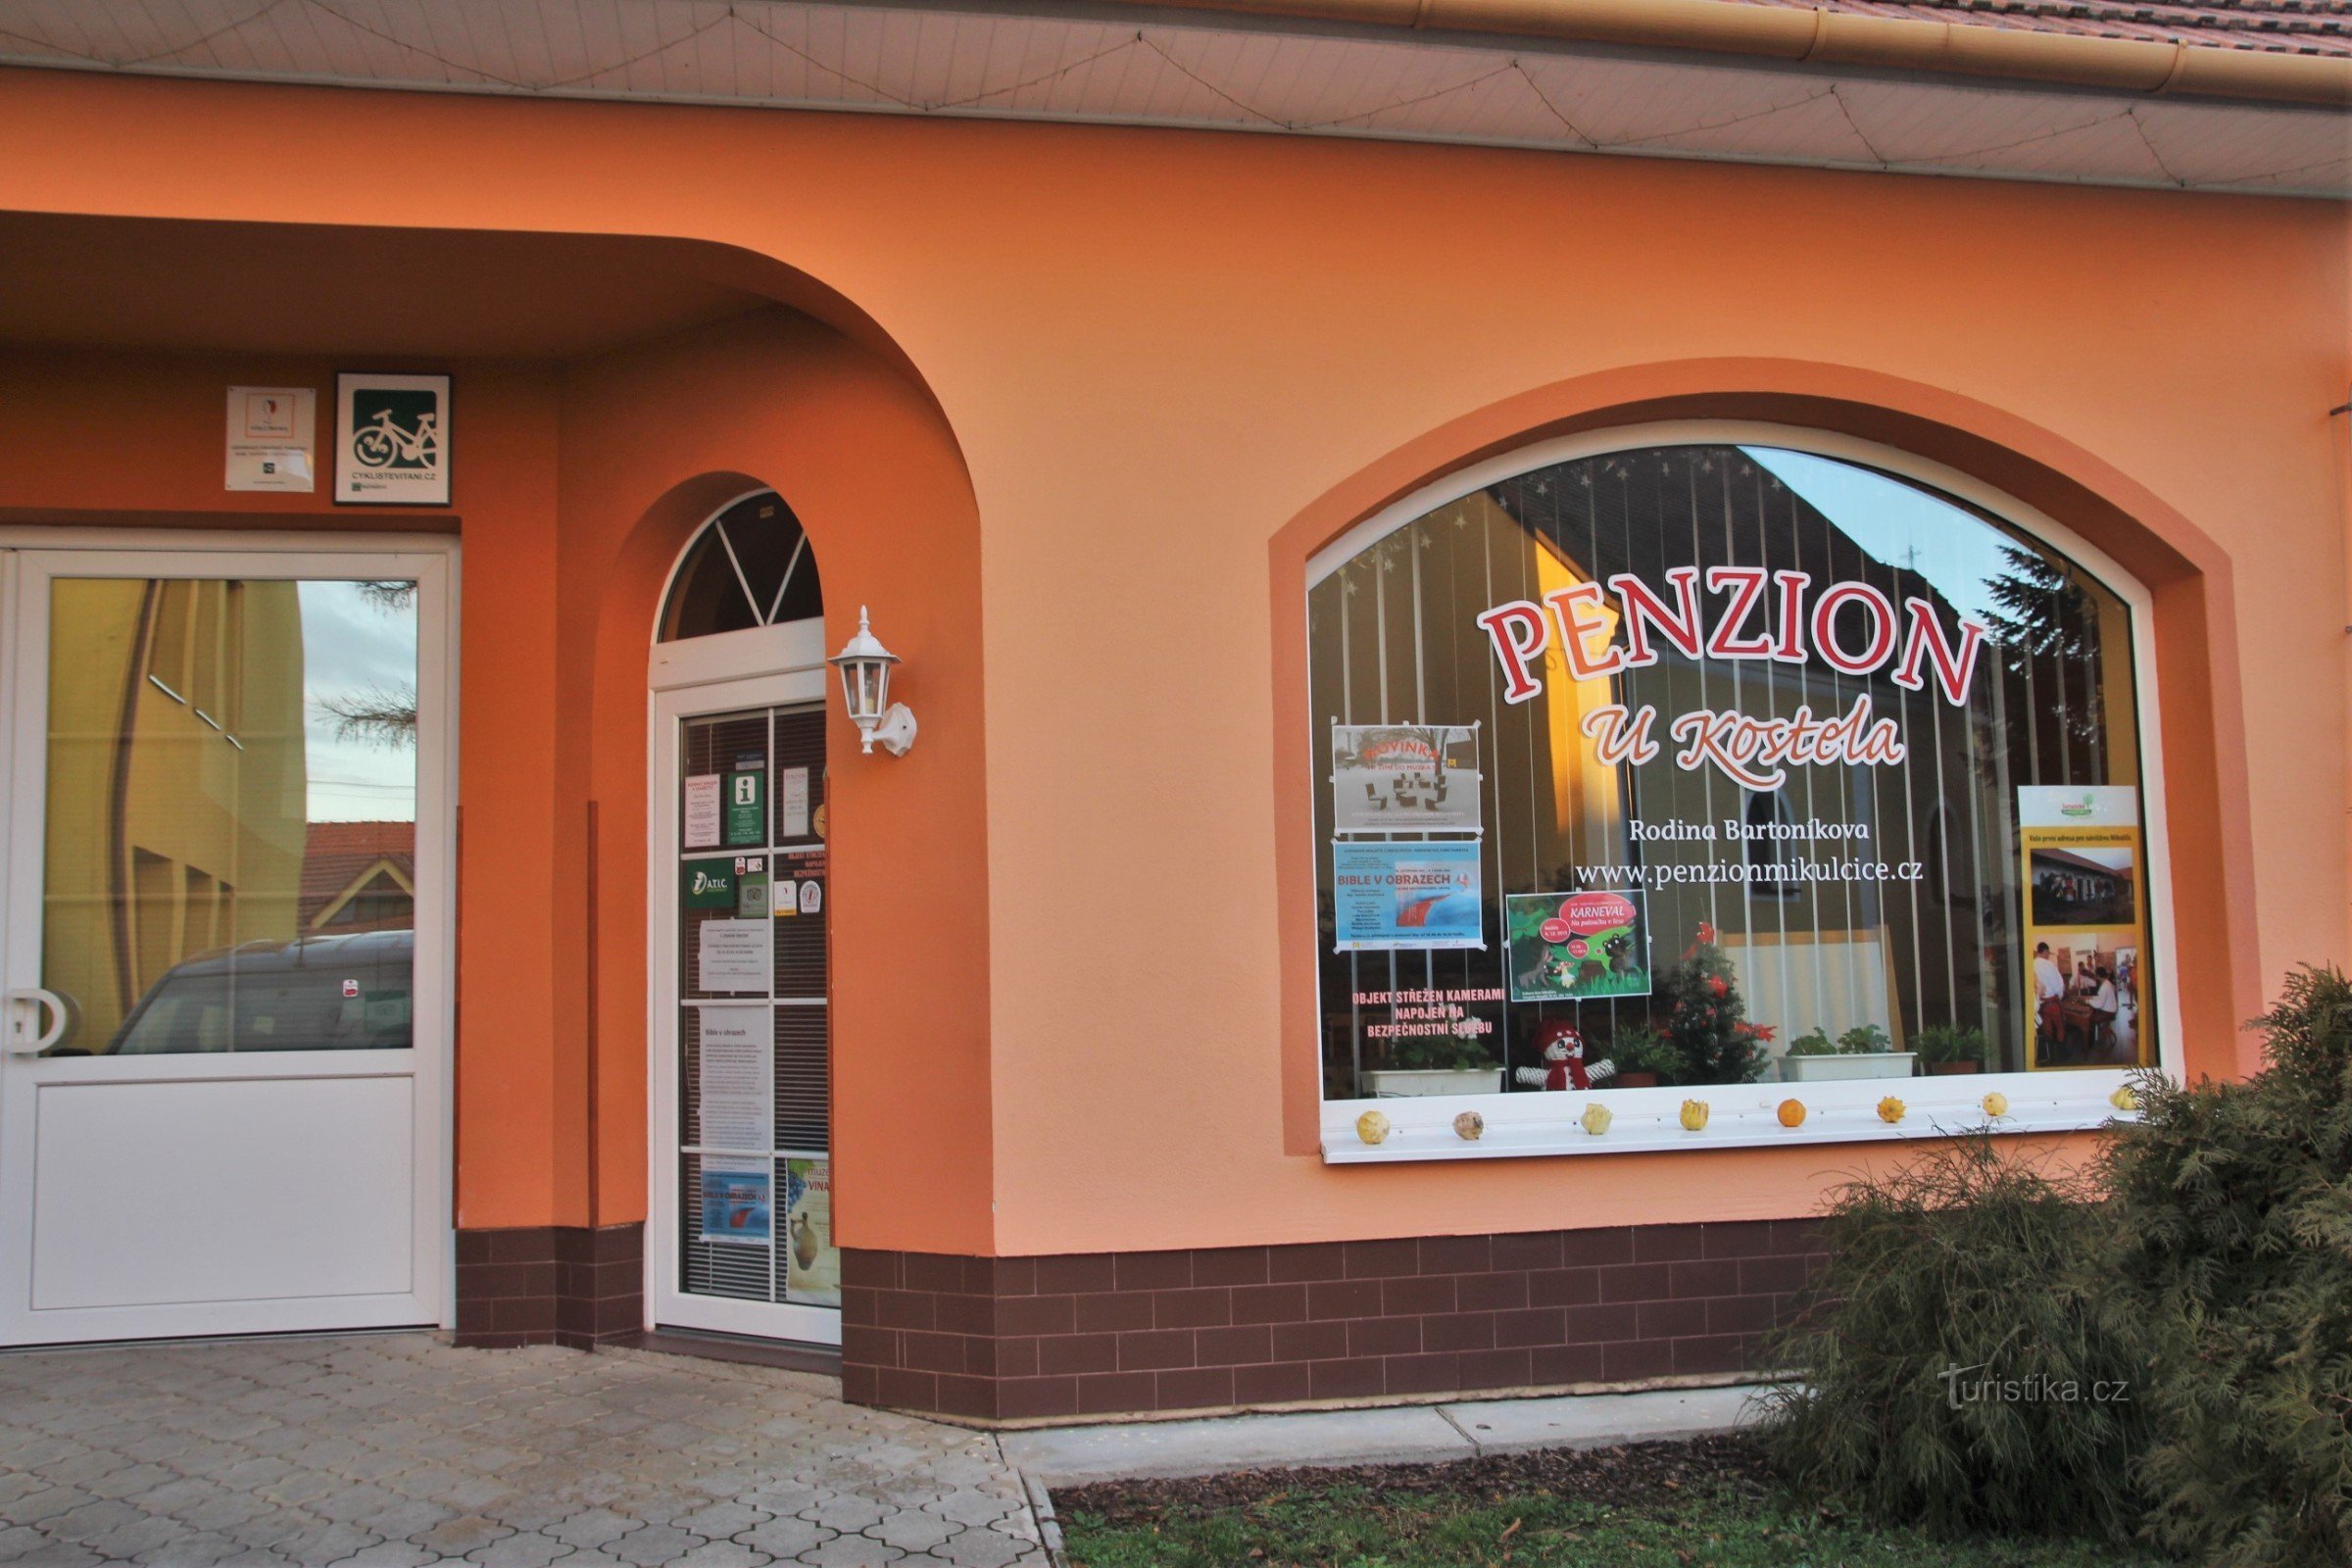 Mikulčice - Centrum Informacji Turystycznej